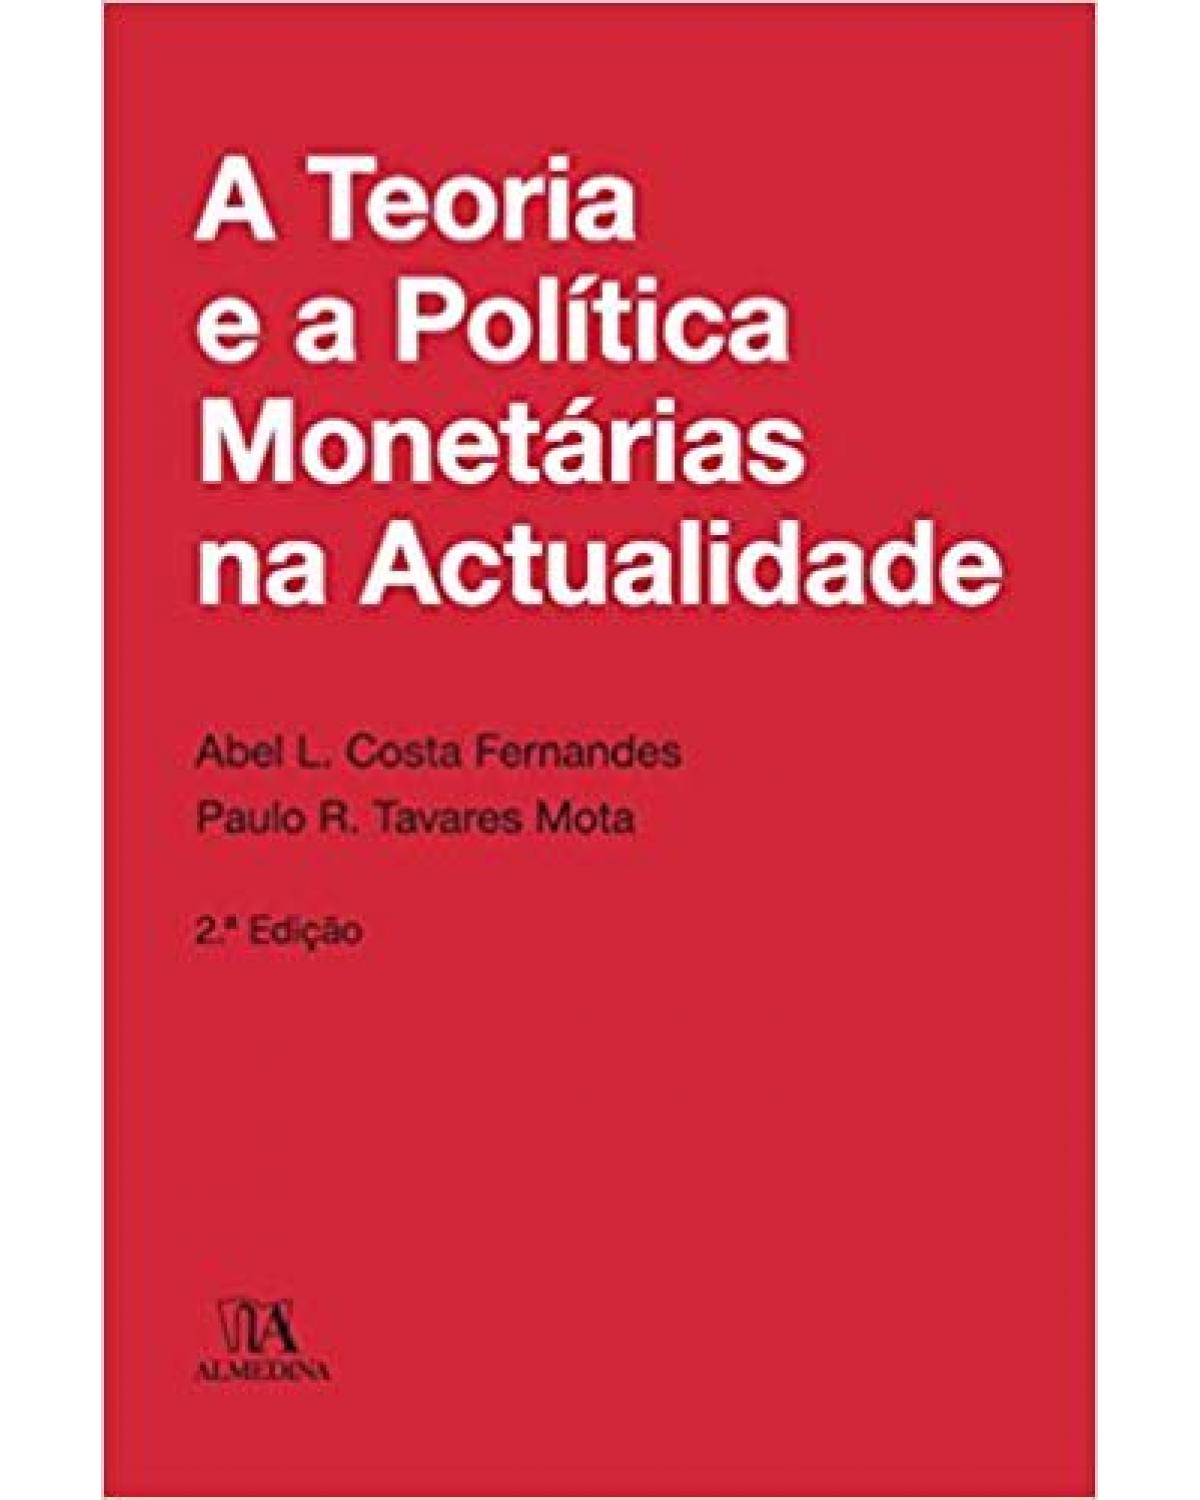 A teoria e a política monetárias na actualidade - 2ª Edição | 2014